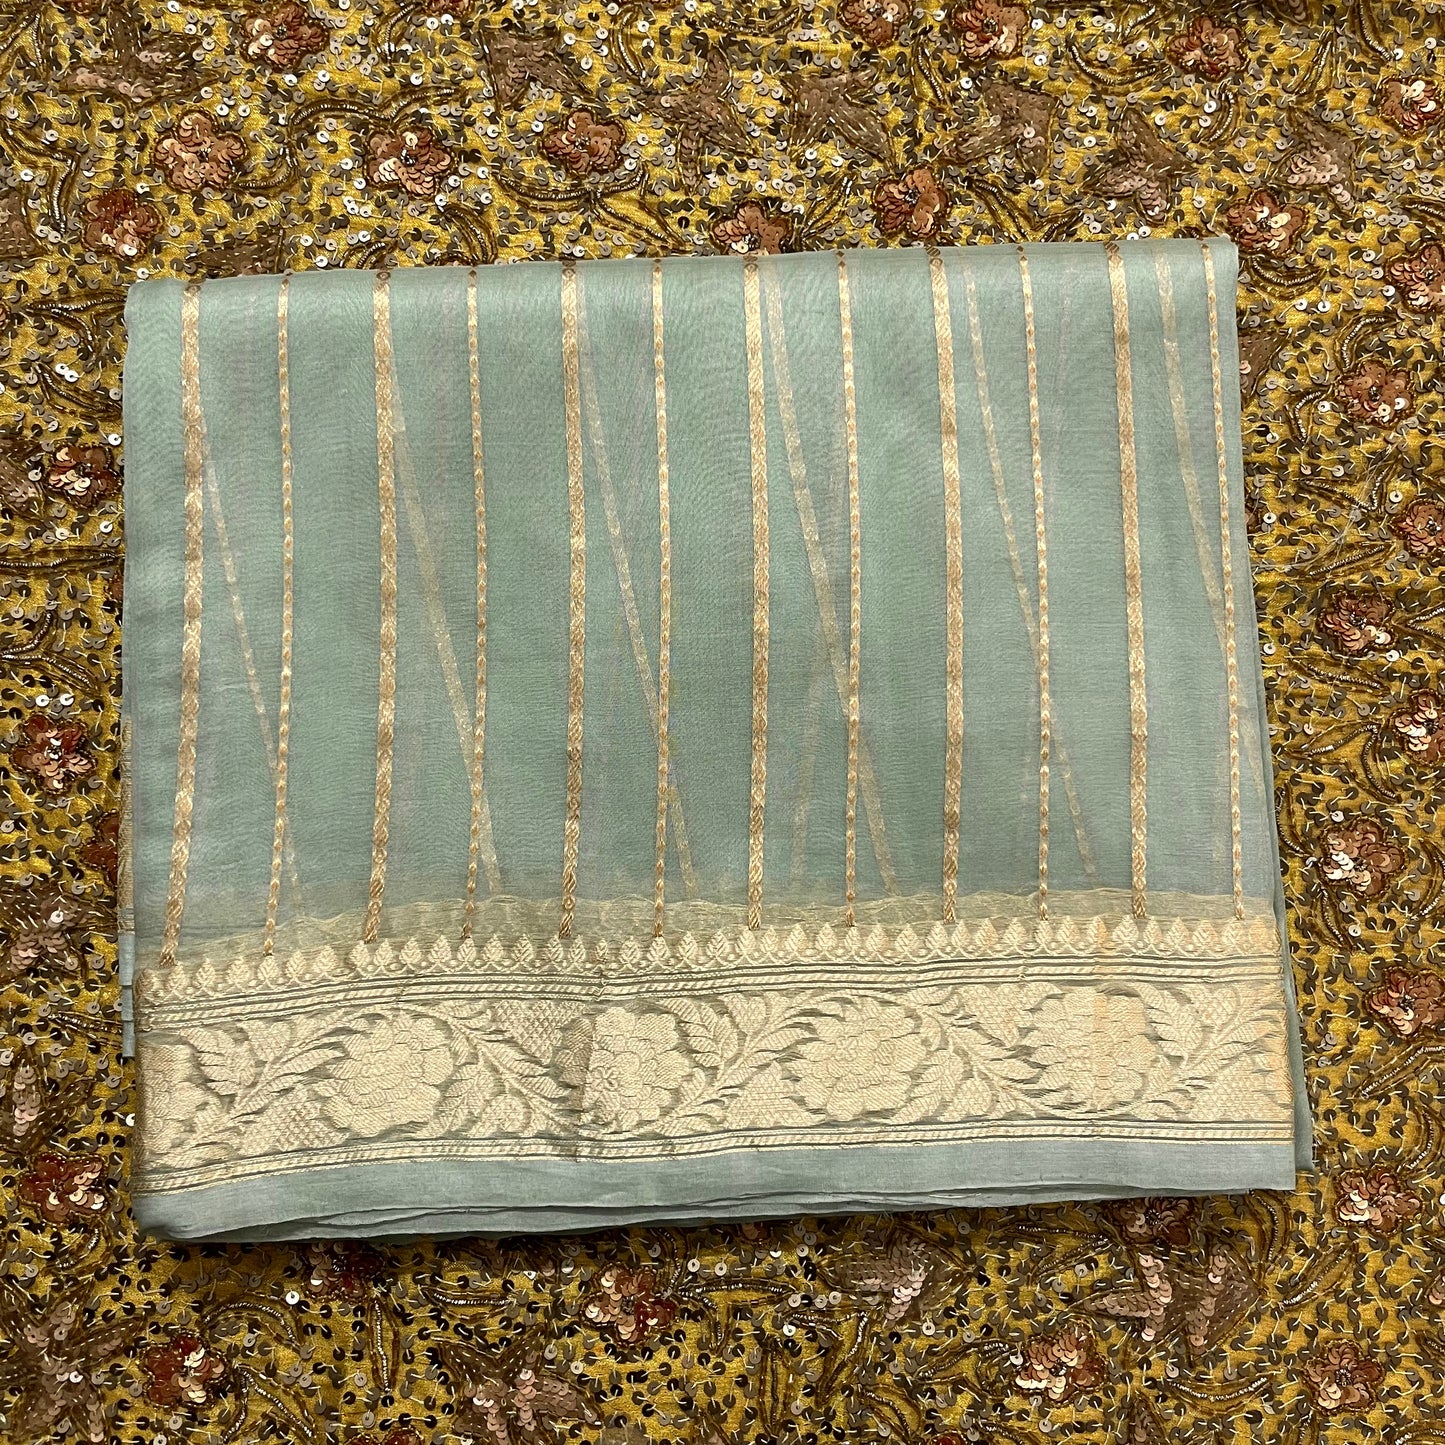 Sage green banarasi saree with zari stripes all over